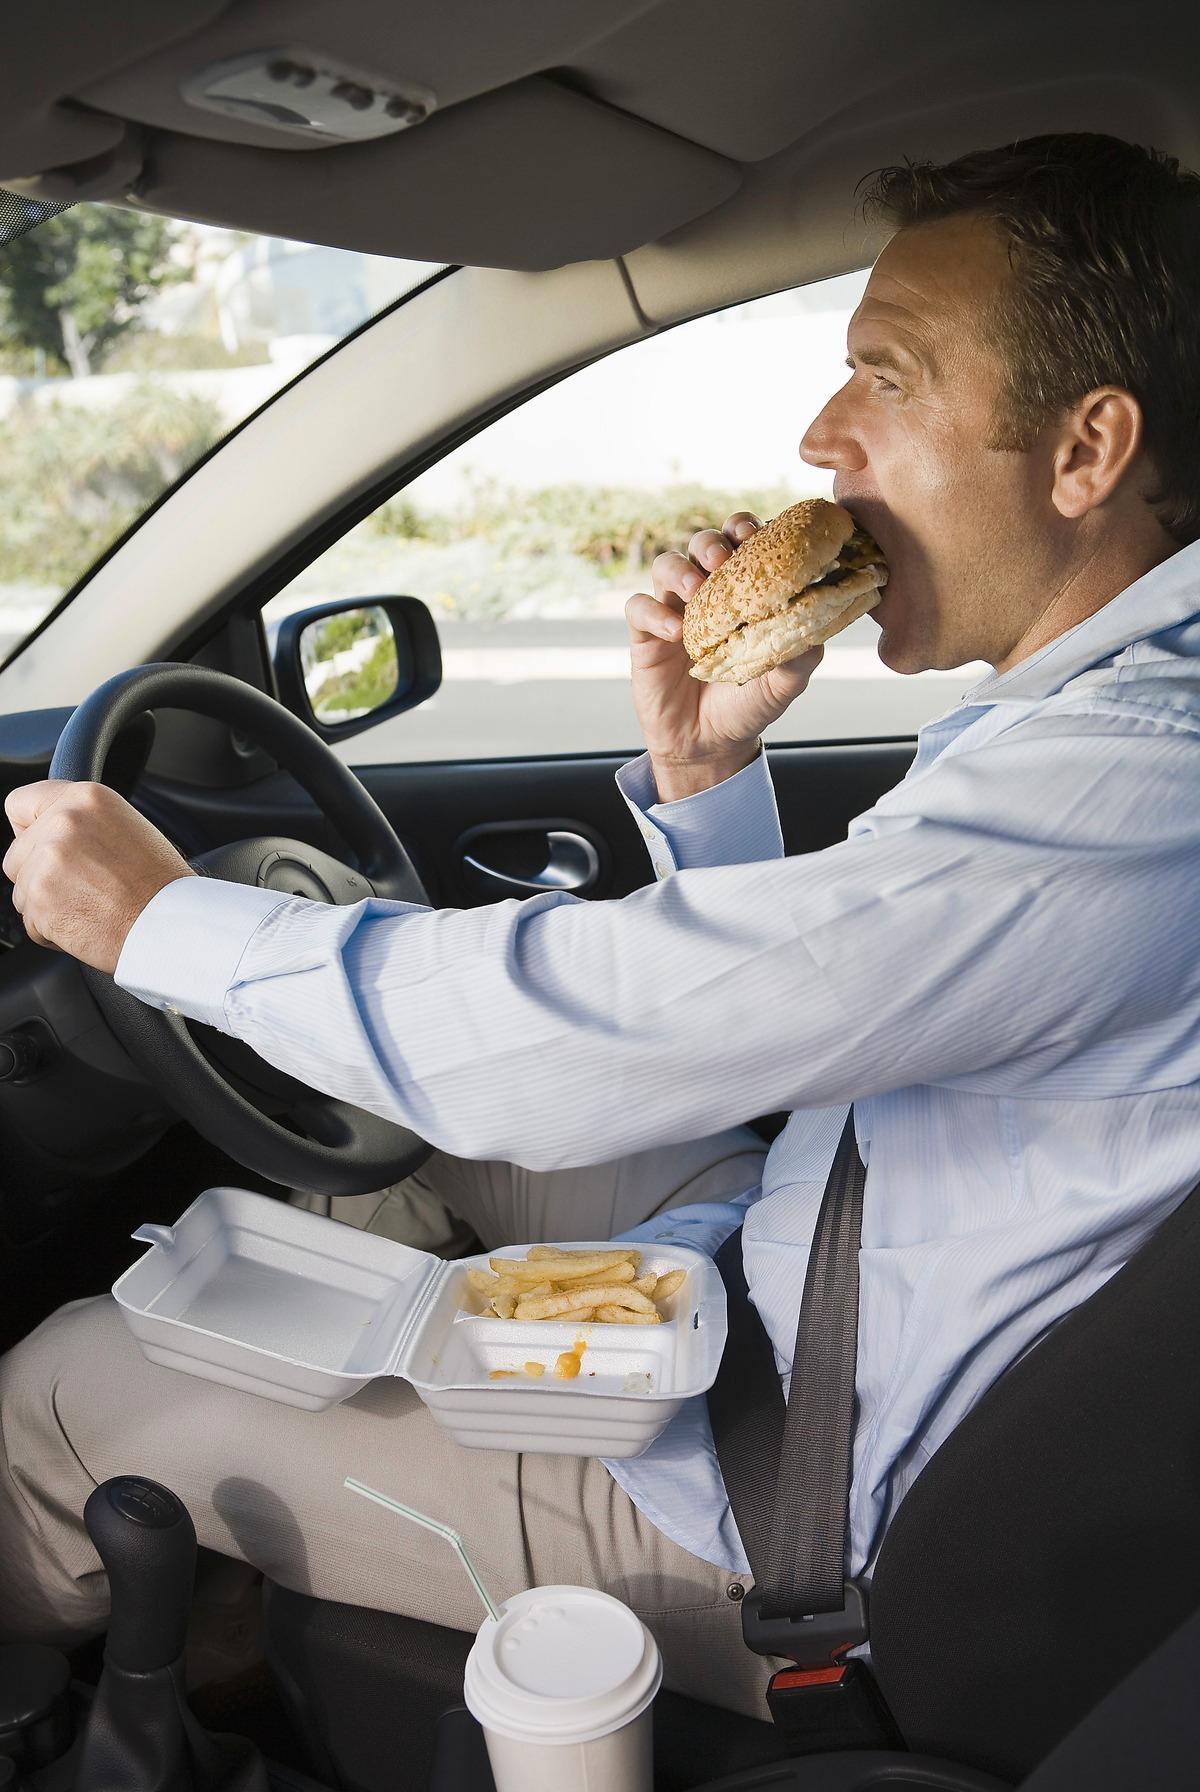 Skitbråttom Din bilratt kan innehålla upp till nio gånger så mycket bakterier som ringen på din toalett, enligt en ny brittisk undersökning. Detta hindrar inte 42 procent av bilförarna att regelbundet inta sin lunch eller middag i förarsätet, enligt samma undersökning.